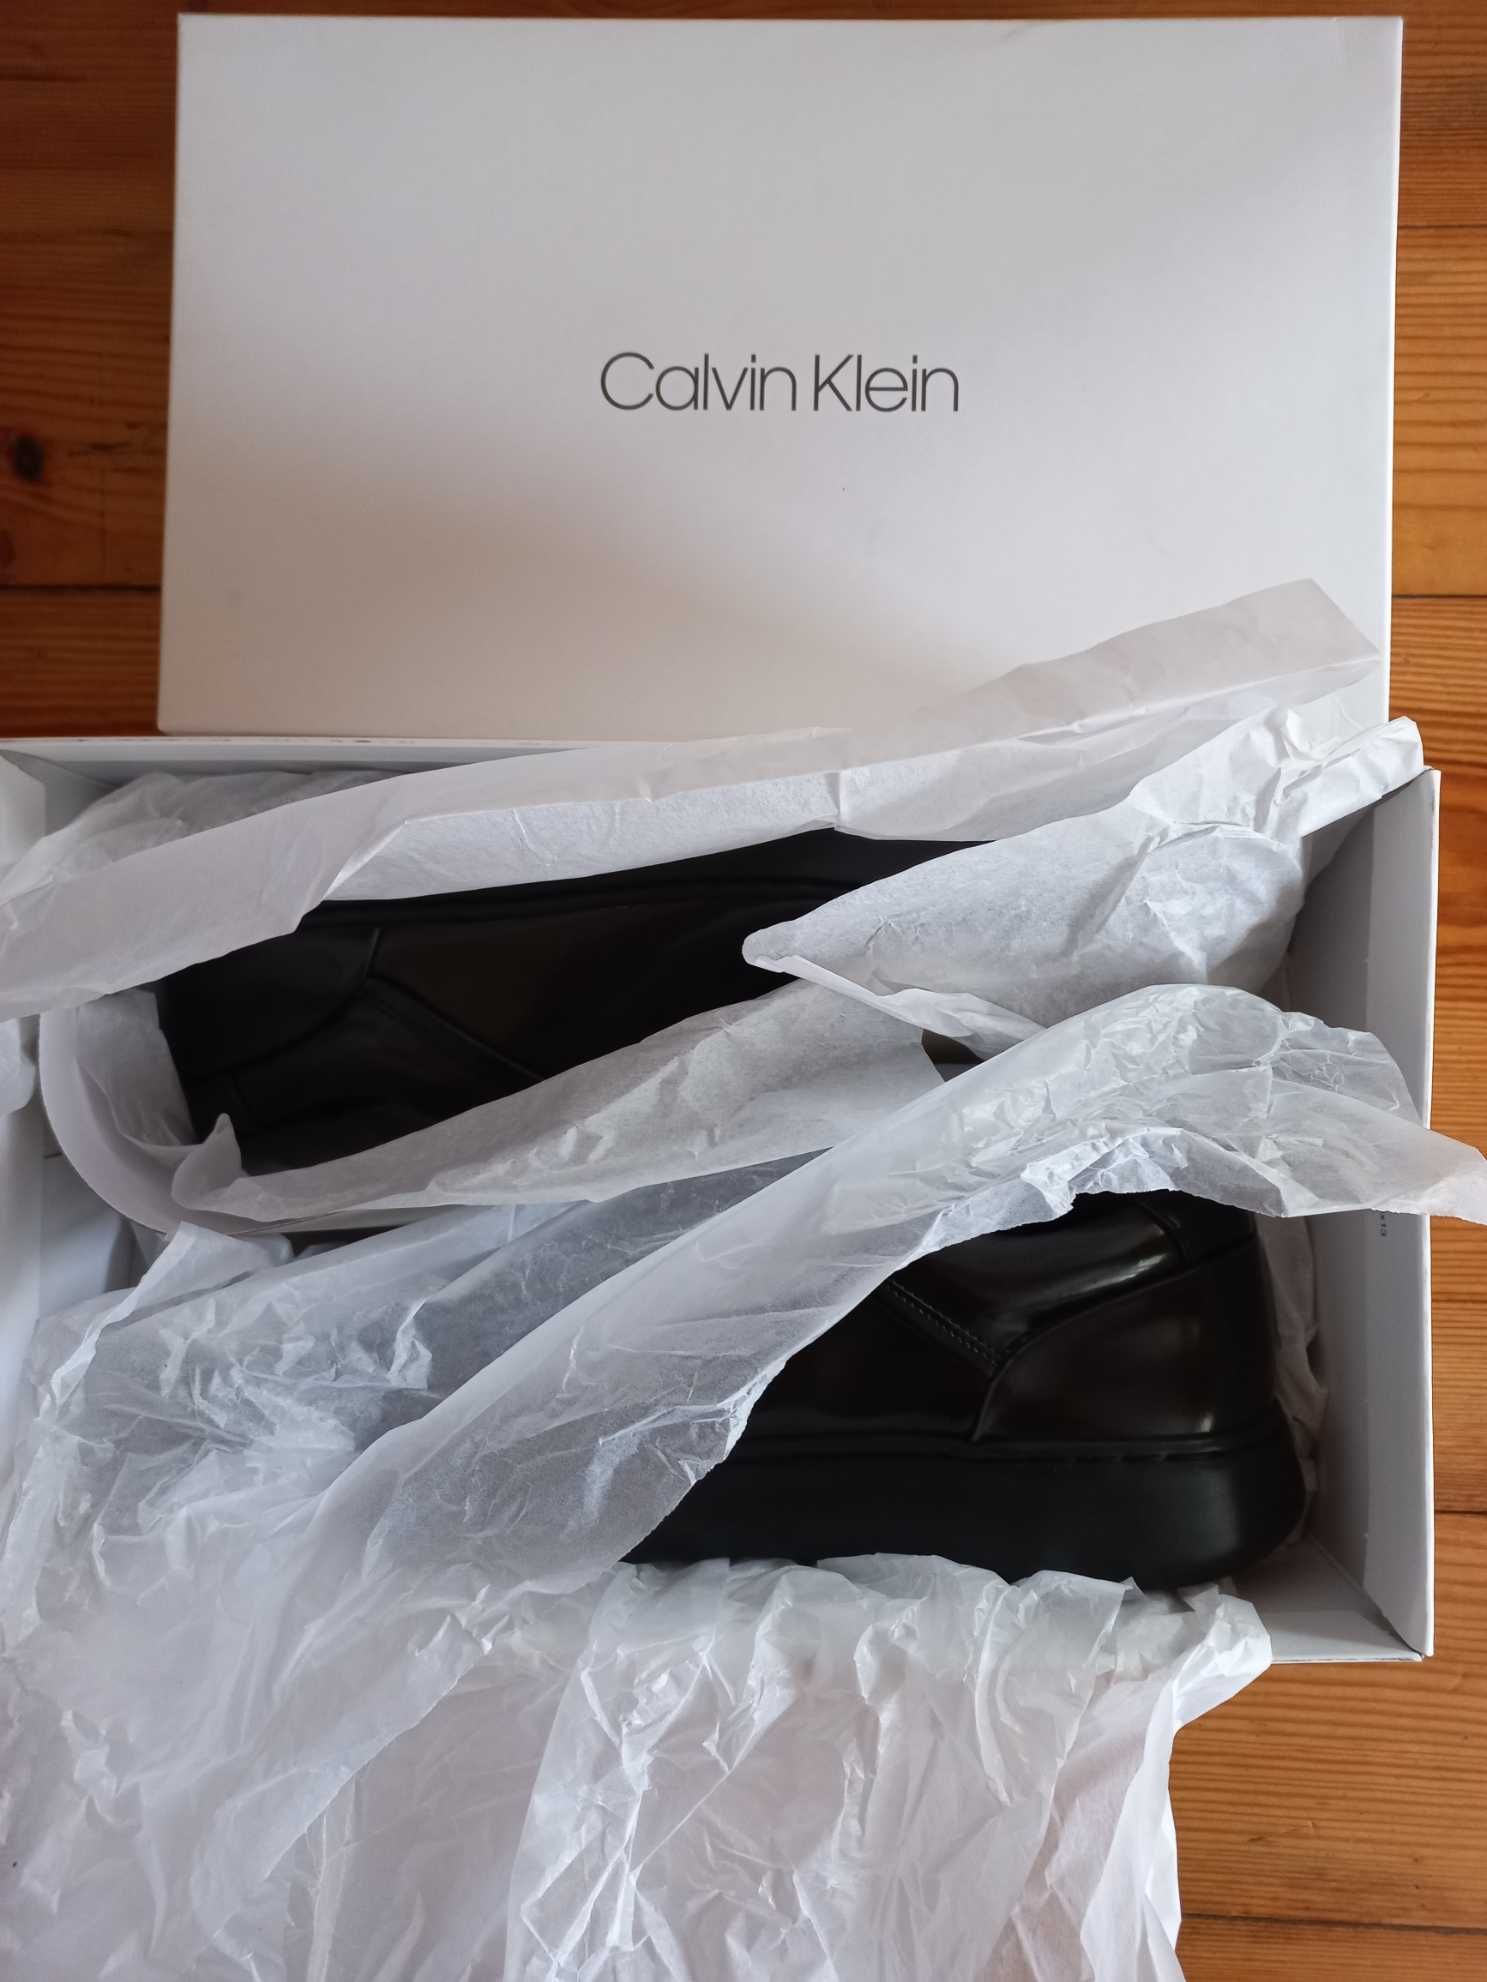 Calvin Klein Buty męskie sportowe B4F2103 r. 41 nowe